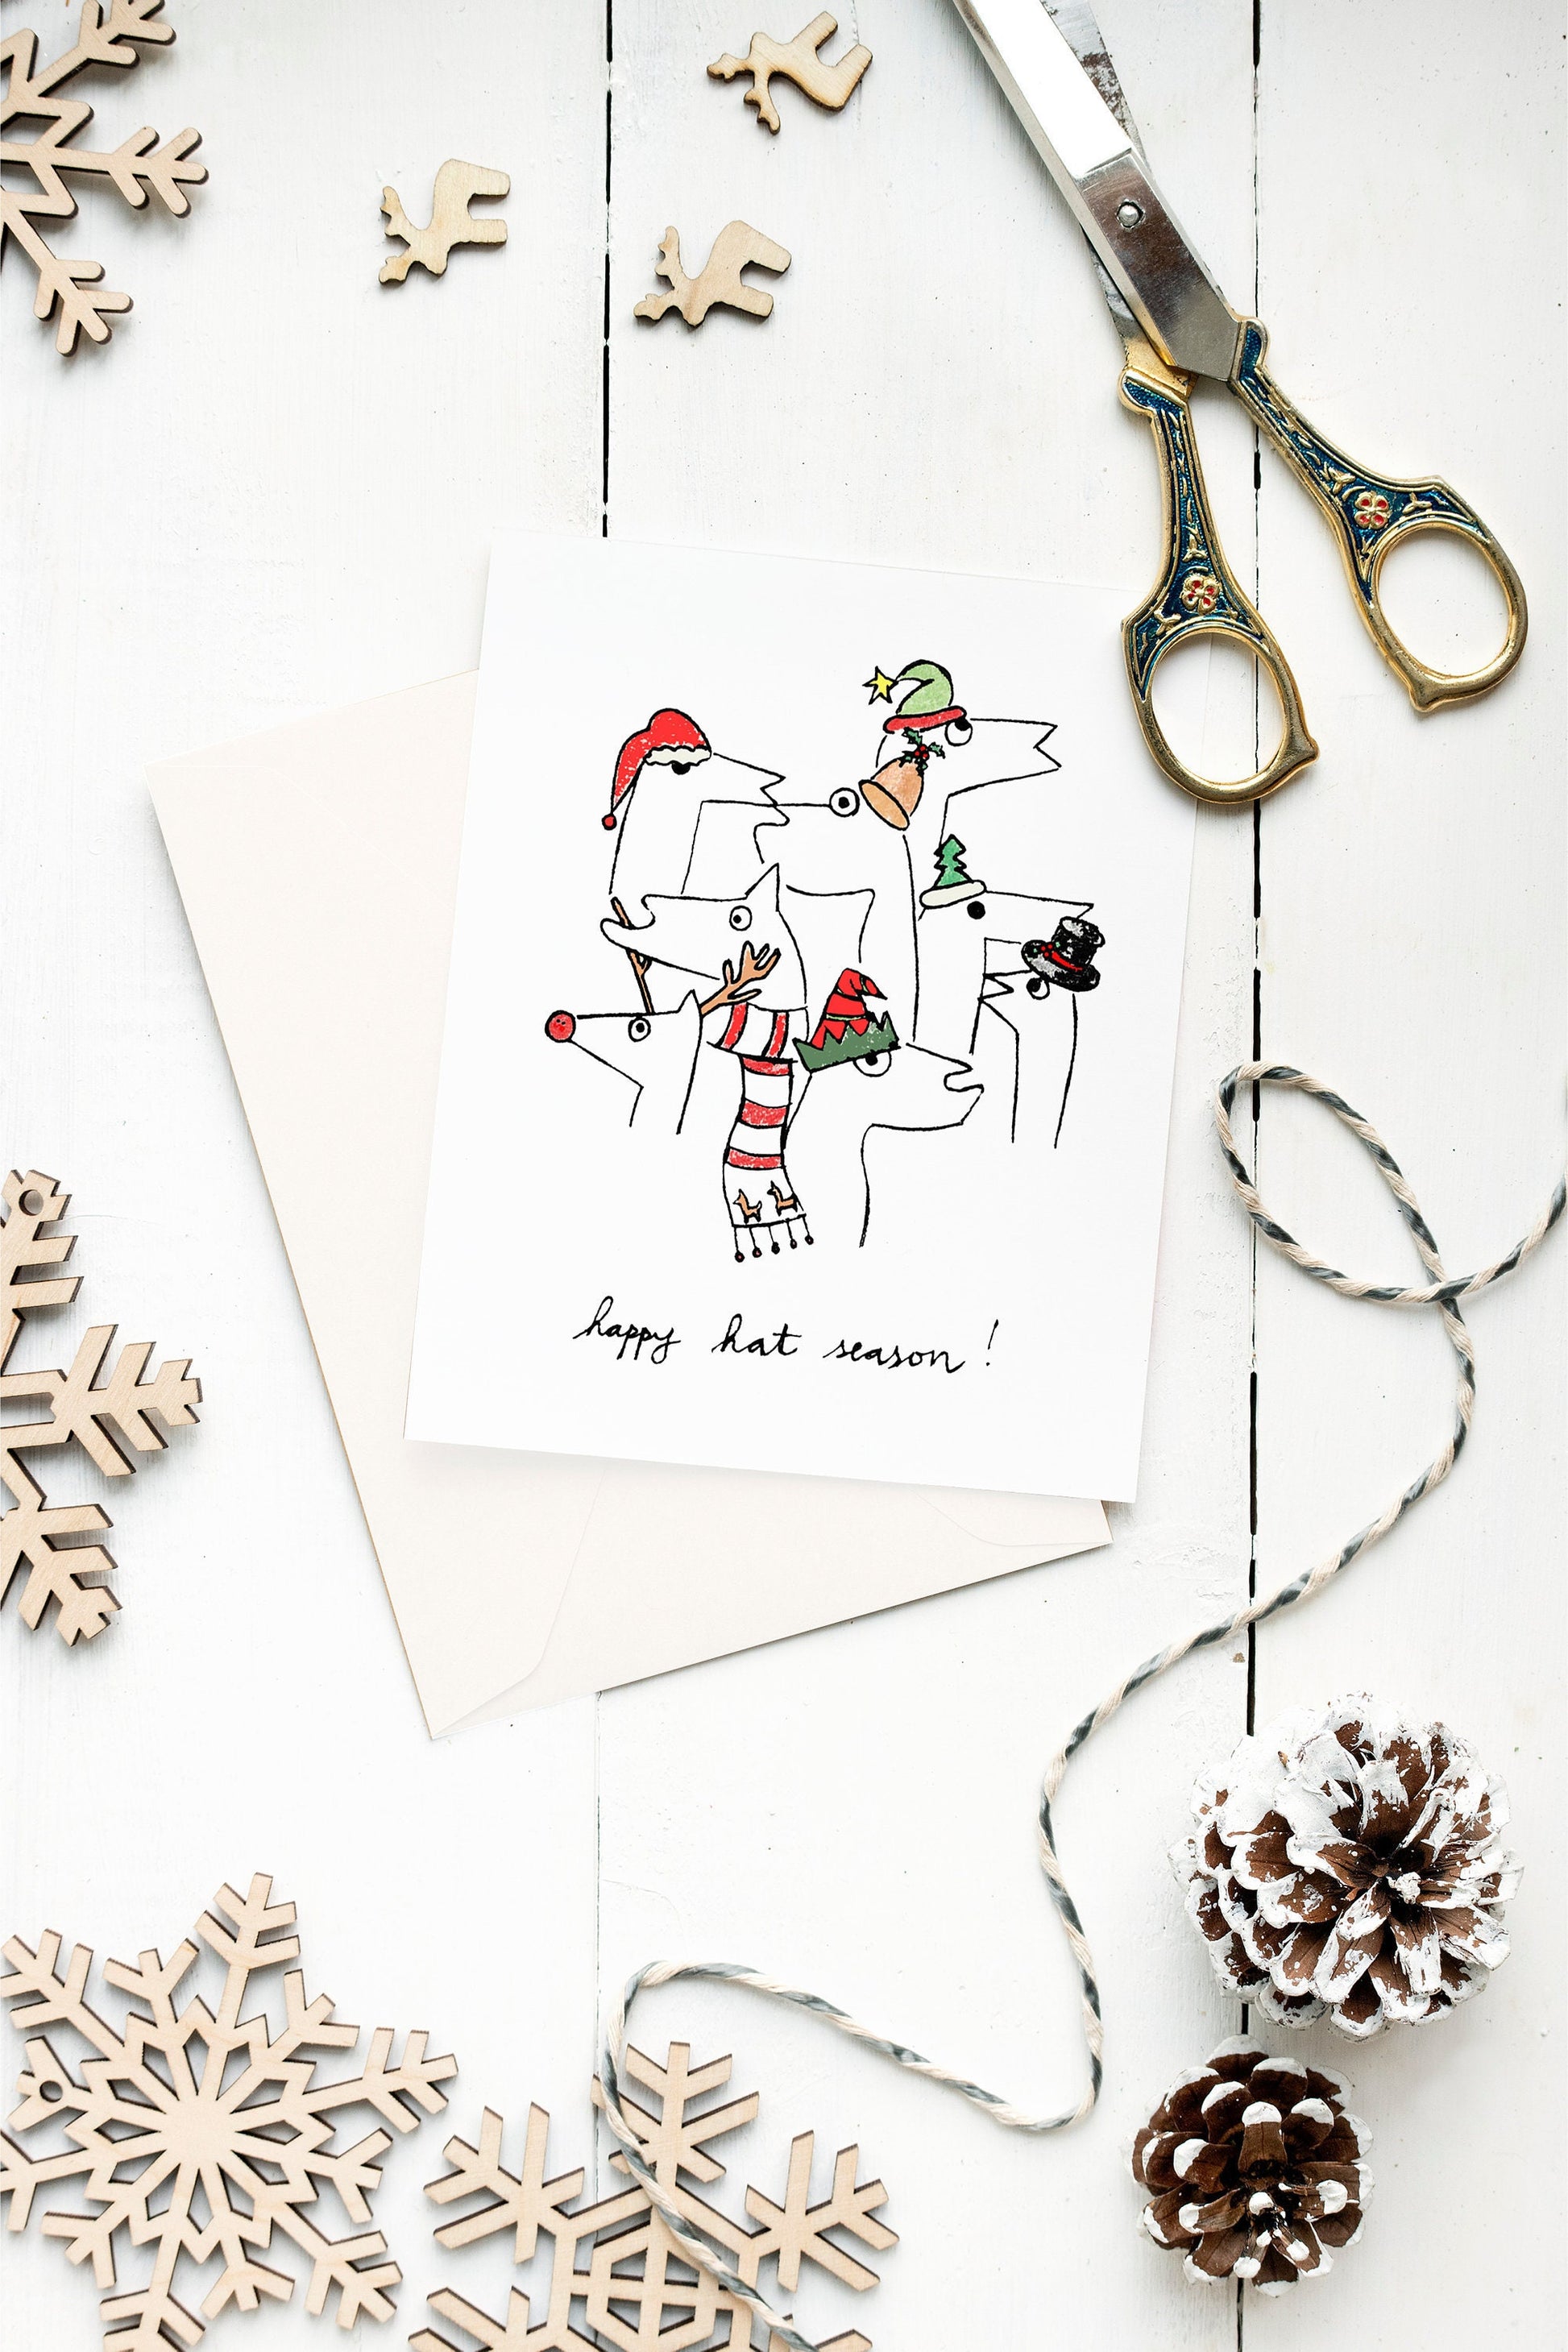 happy hat season, winter llamas holiday card, quirky christmas card, trendy llamas